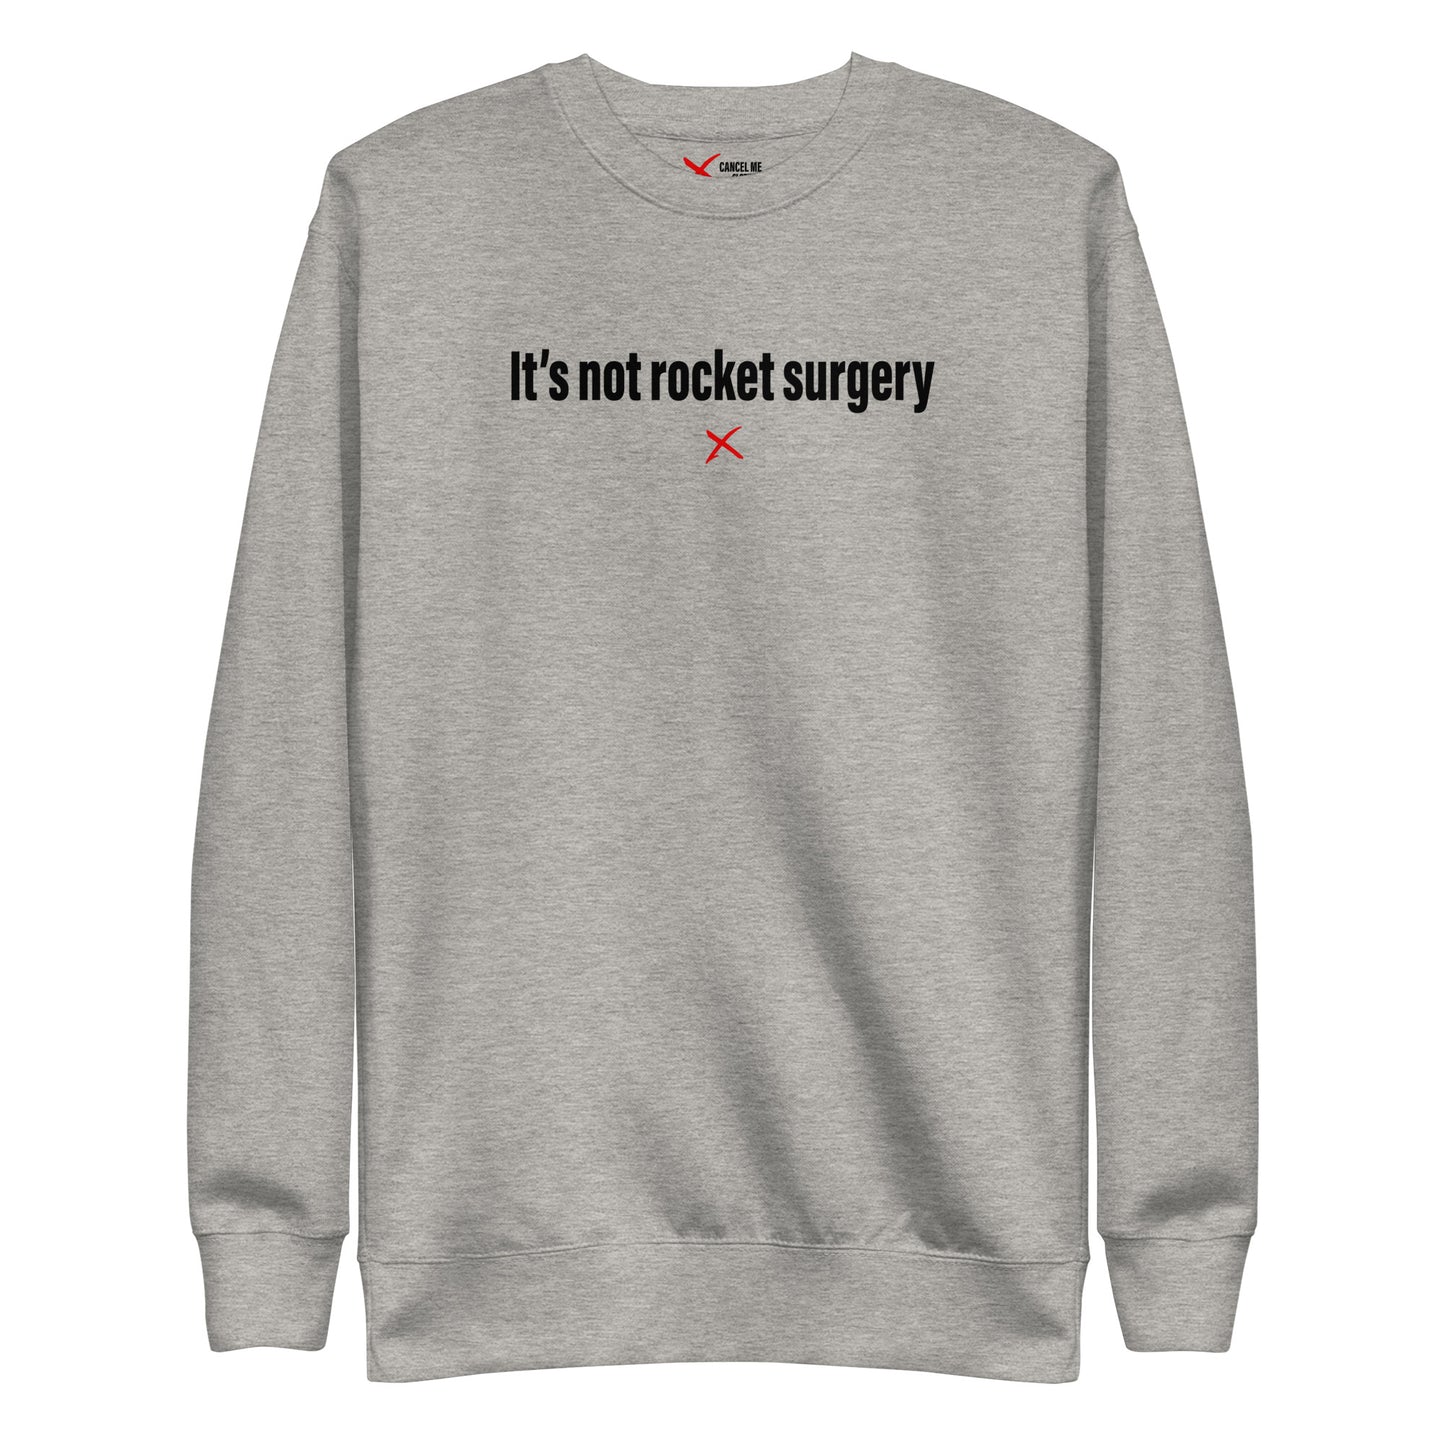 It's not rocket surgery - Sweatshirt